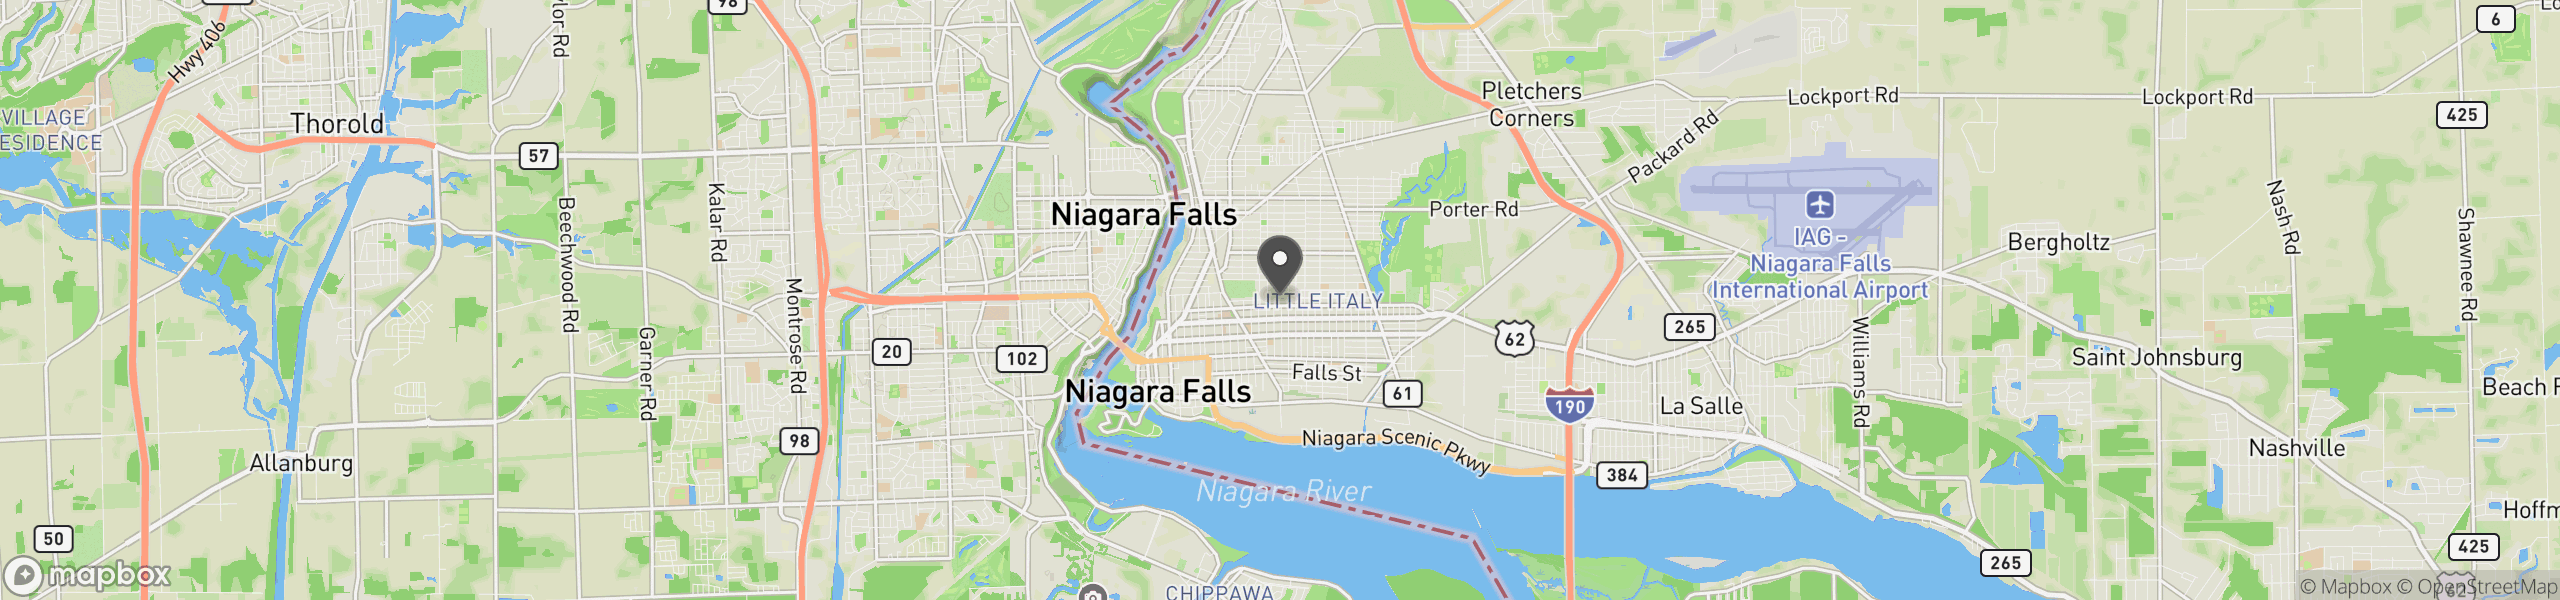 Niagara Falls, NY 14301